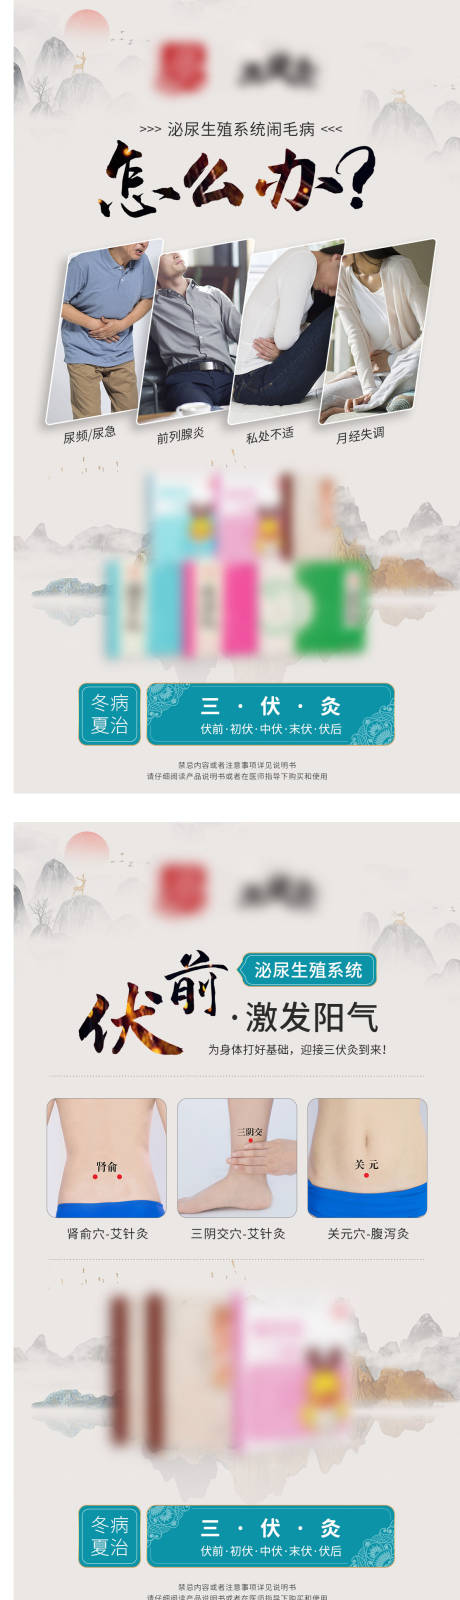 中式微商系列海报